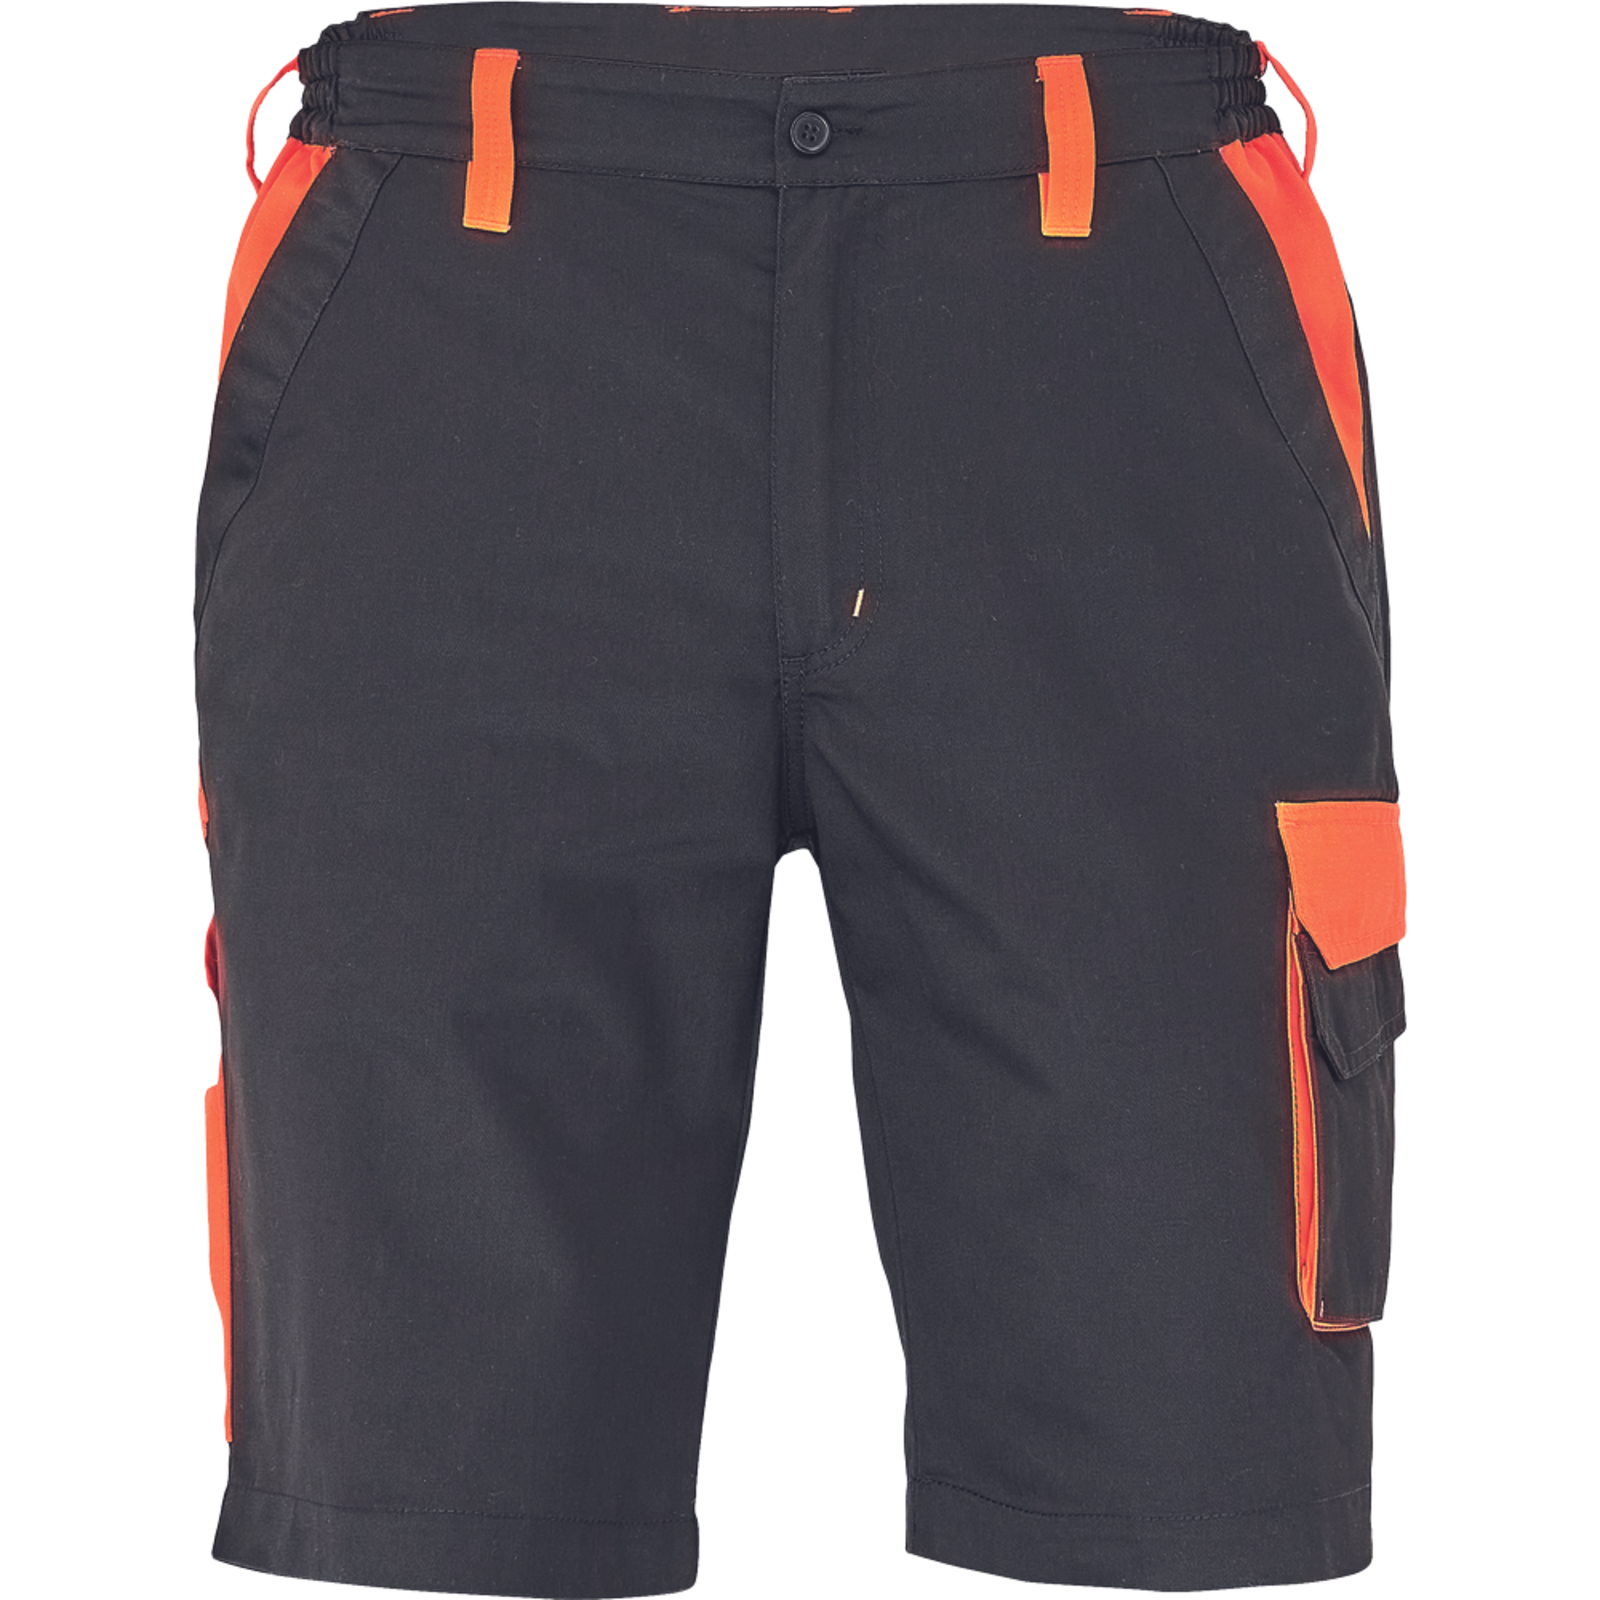 Pánske šortky Cerva Max Vivo - veľkosť: 50, farba: čierna/oranžová